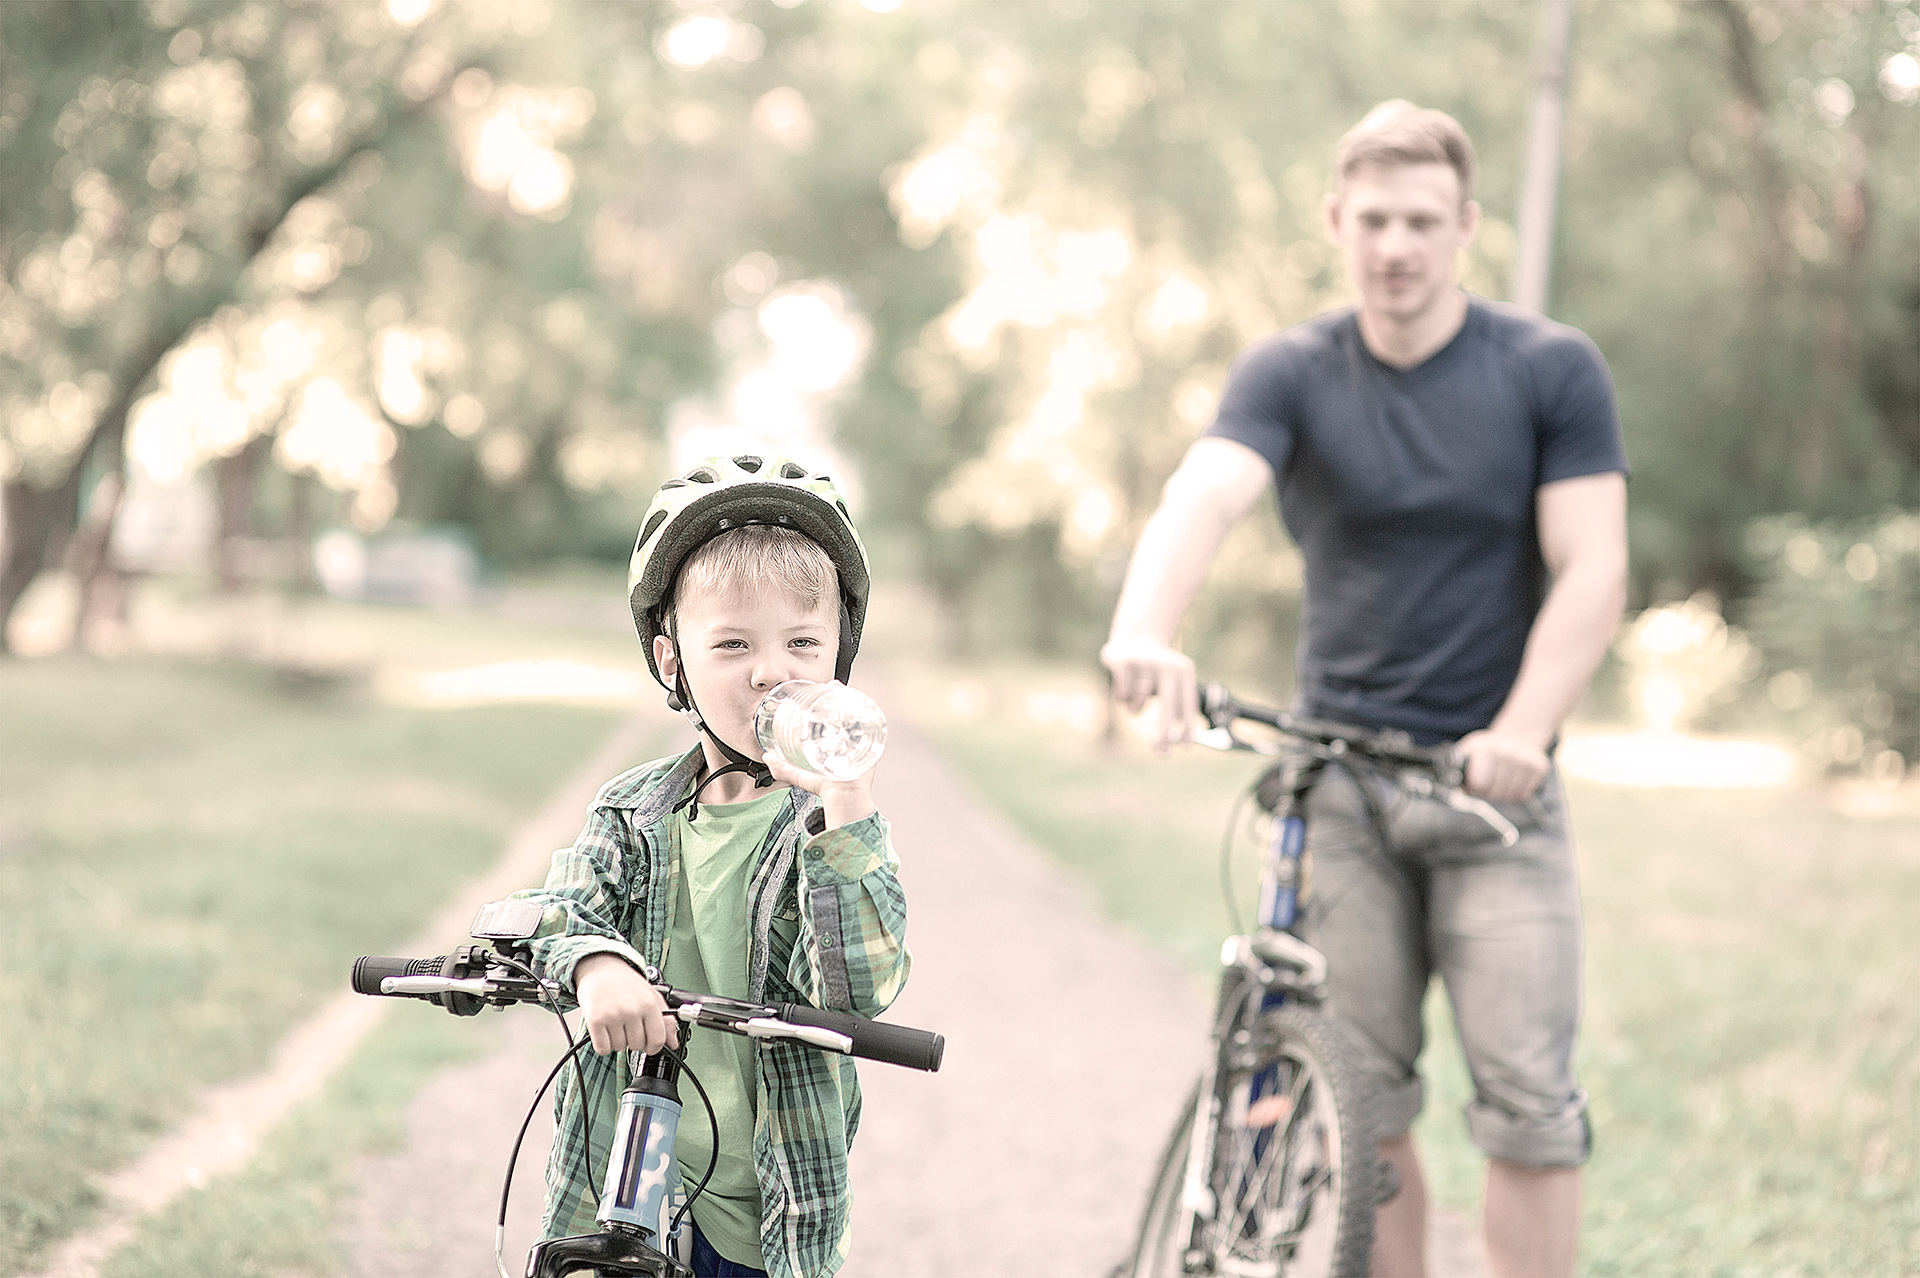 Dreng står med sin cykel, mens han drikker af en vandflaske. Far står i baggrunden med sin cykel og kigger på drengen